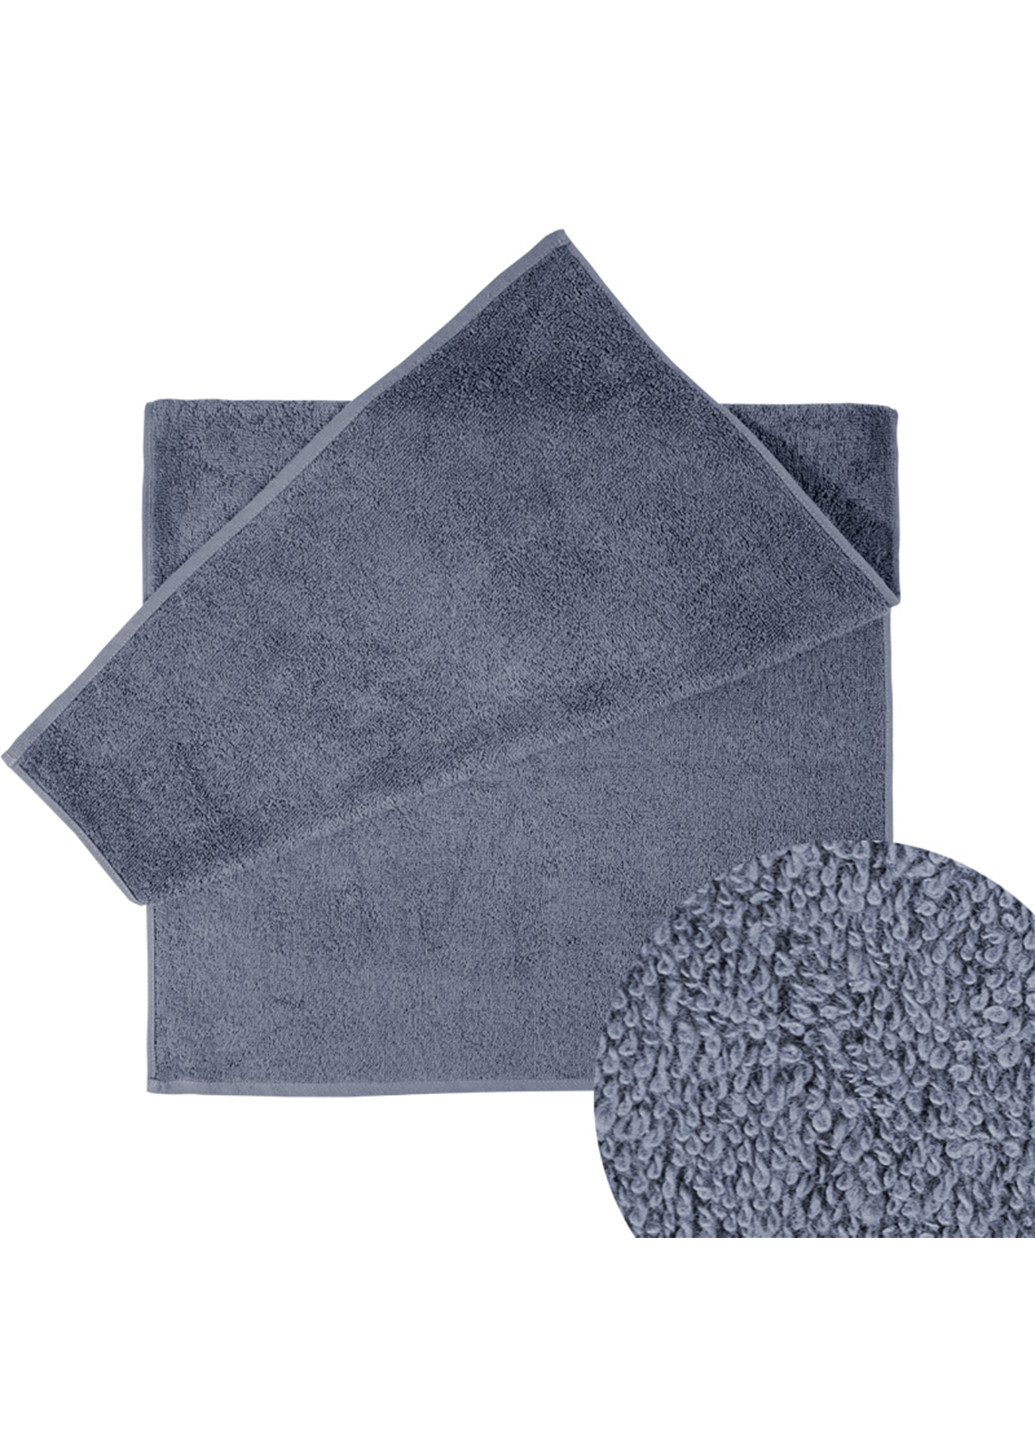 Ярослав полотенце яр-400 махровое 70х140 однотонный темно-серый производство - Украина